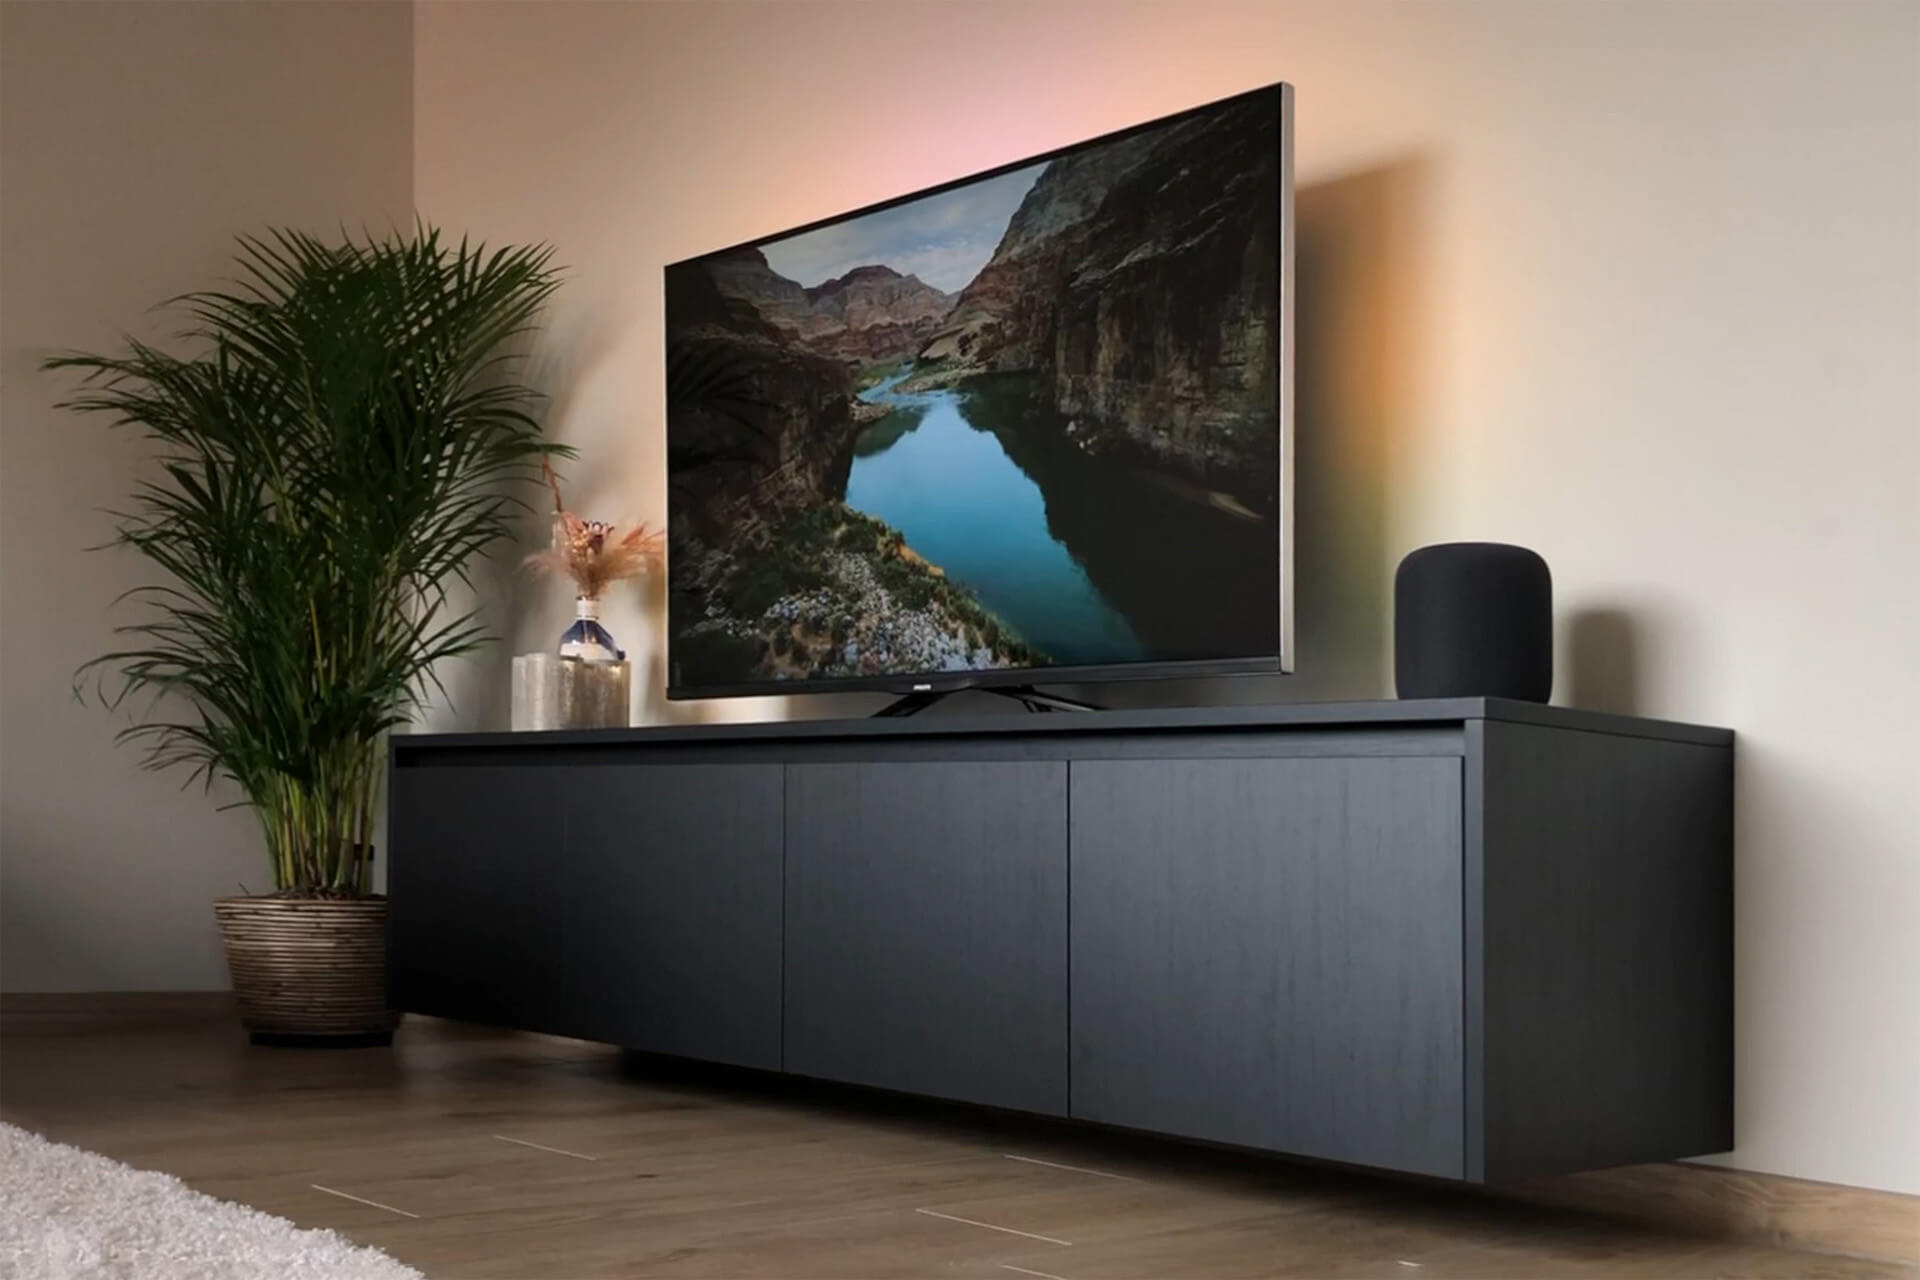 Zwart, zwevend tv meubel met greeplijst op maat van maatkastenonline